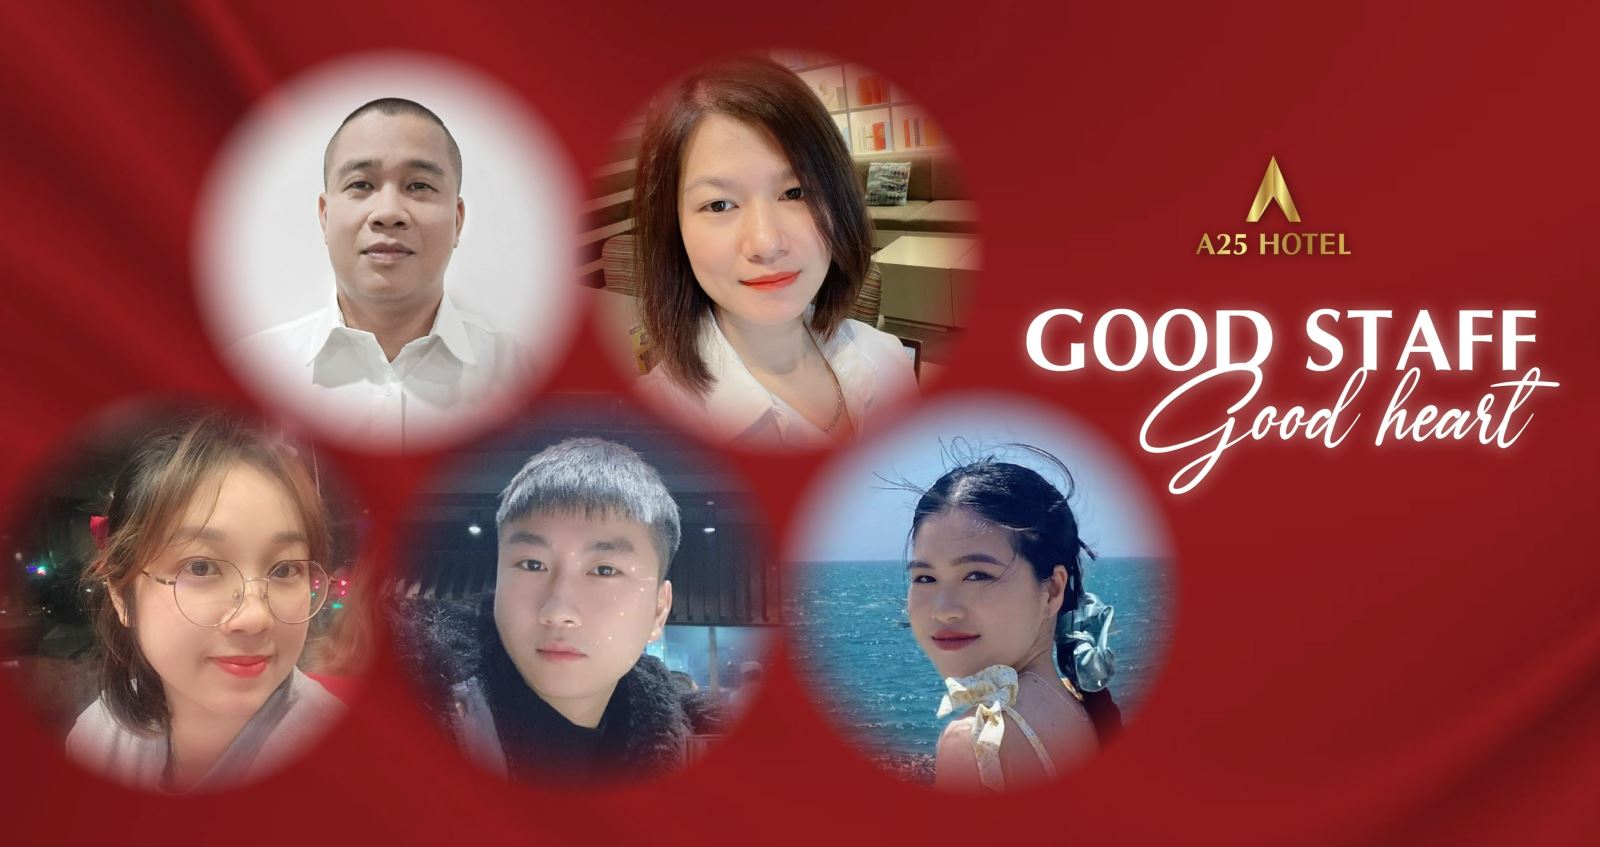 A25 Good Staff & Good Heart: Chiến Binh Ong Vàng Rộn Ràng Up Sale Tốt